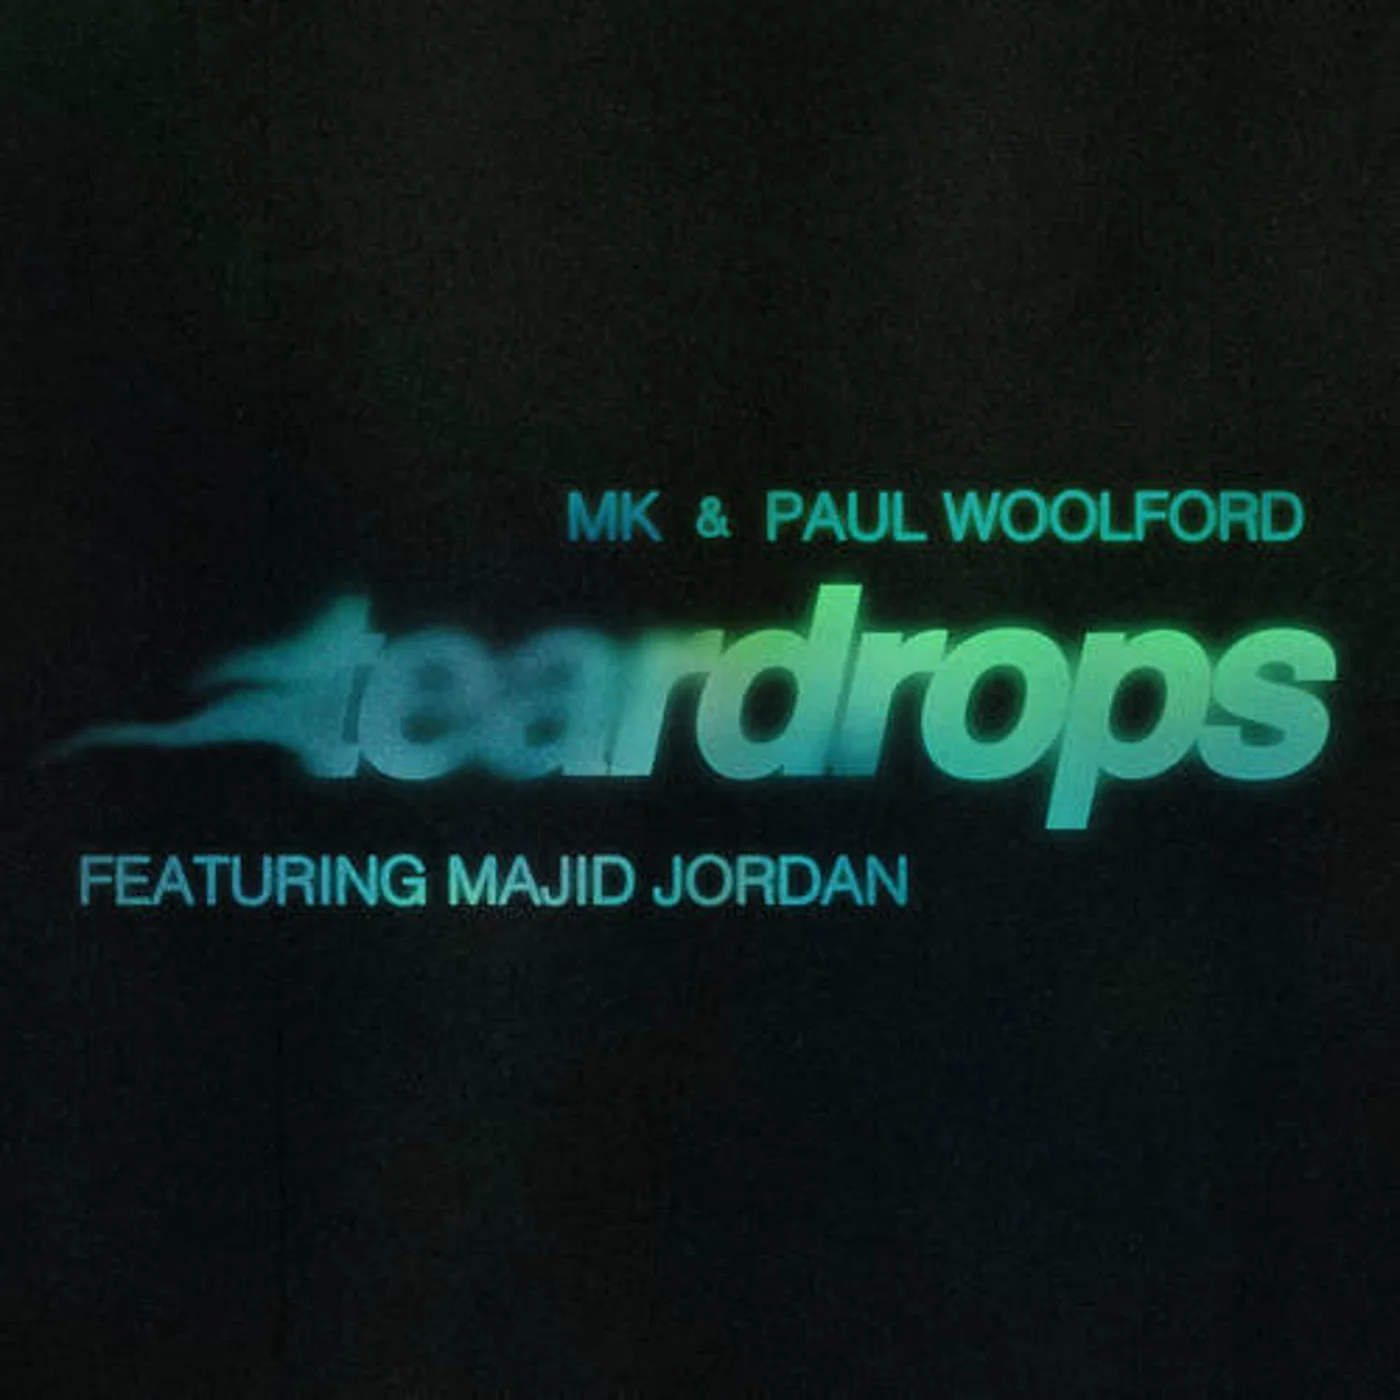 MK & Paul Woolford featuring Majid Jordan — Teardrops cover artwork